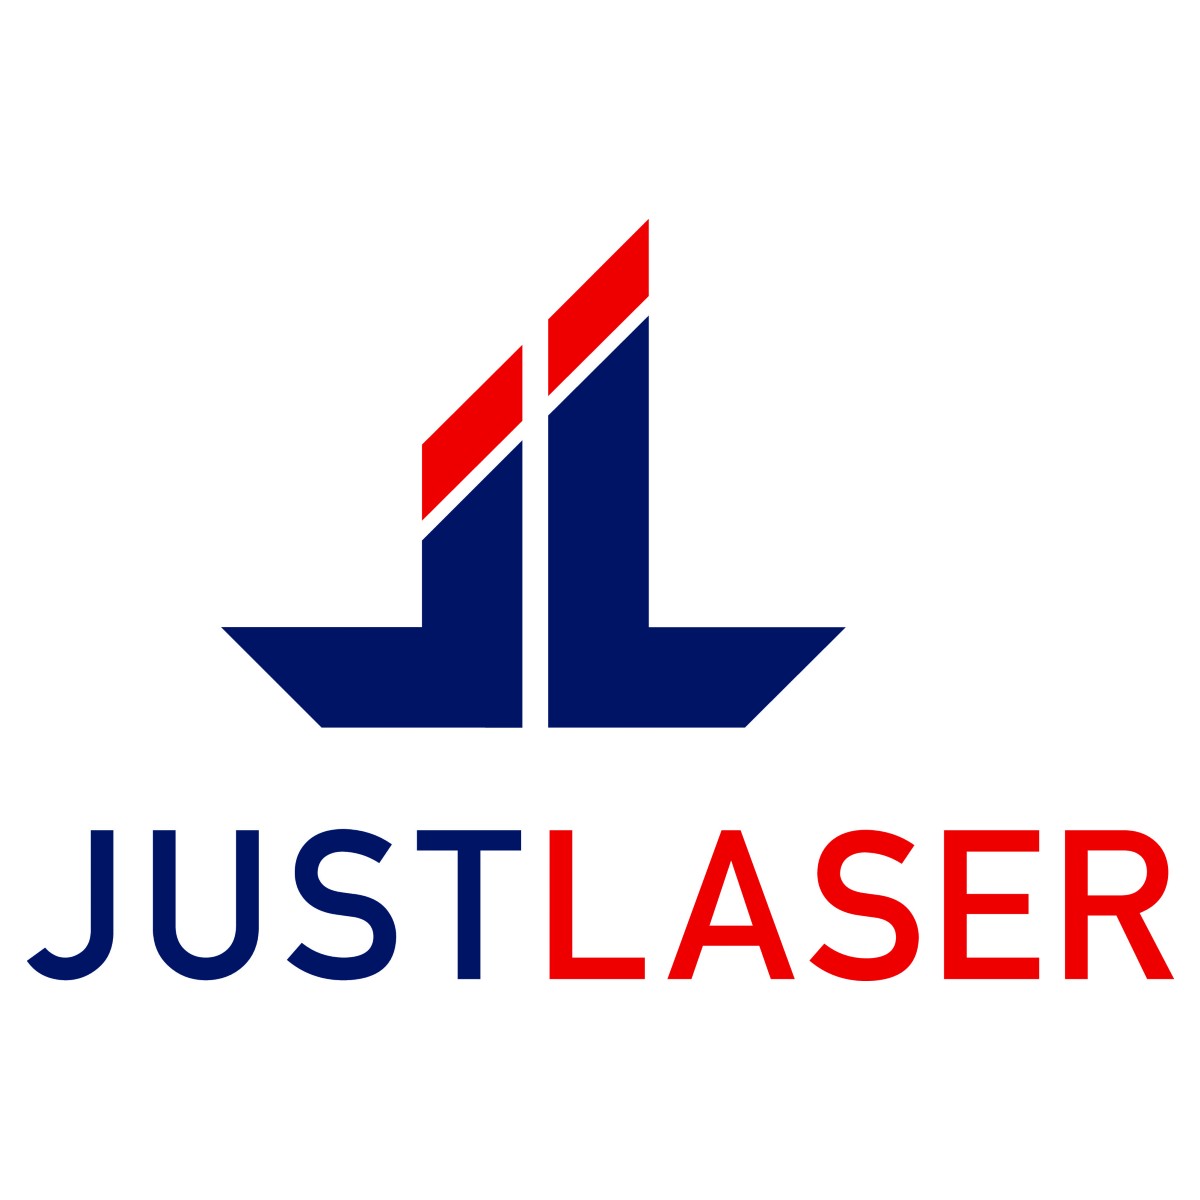 JustLaser GmbH